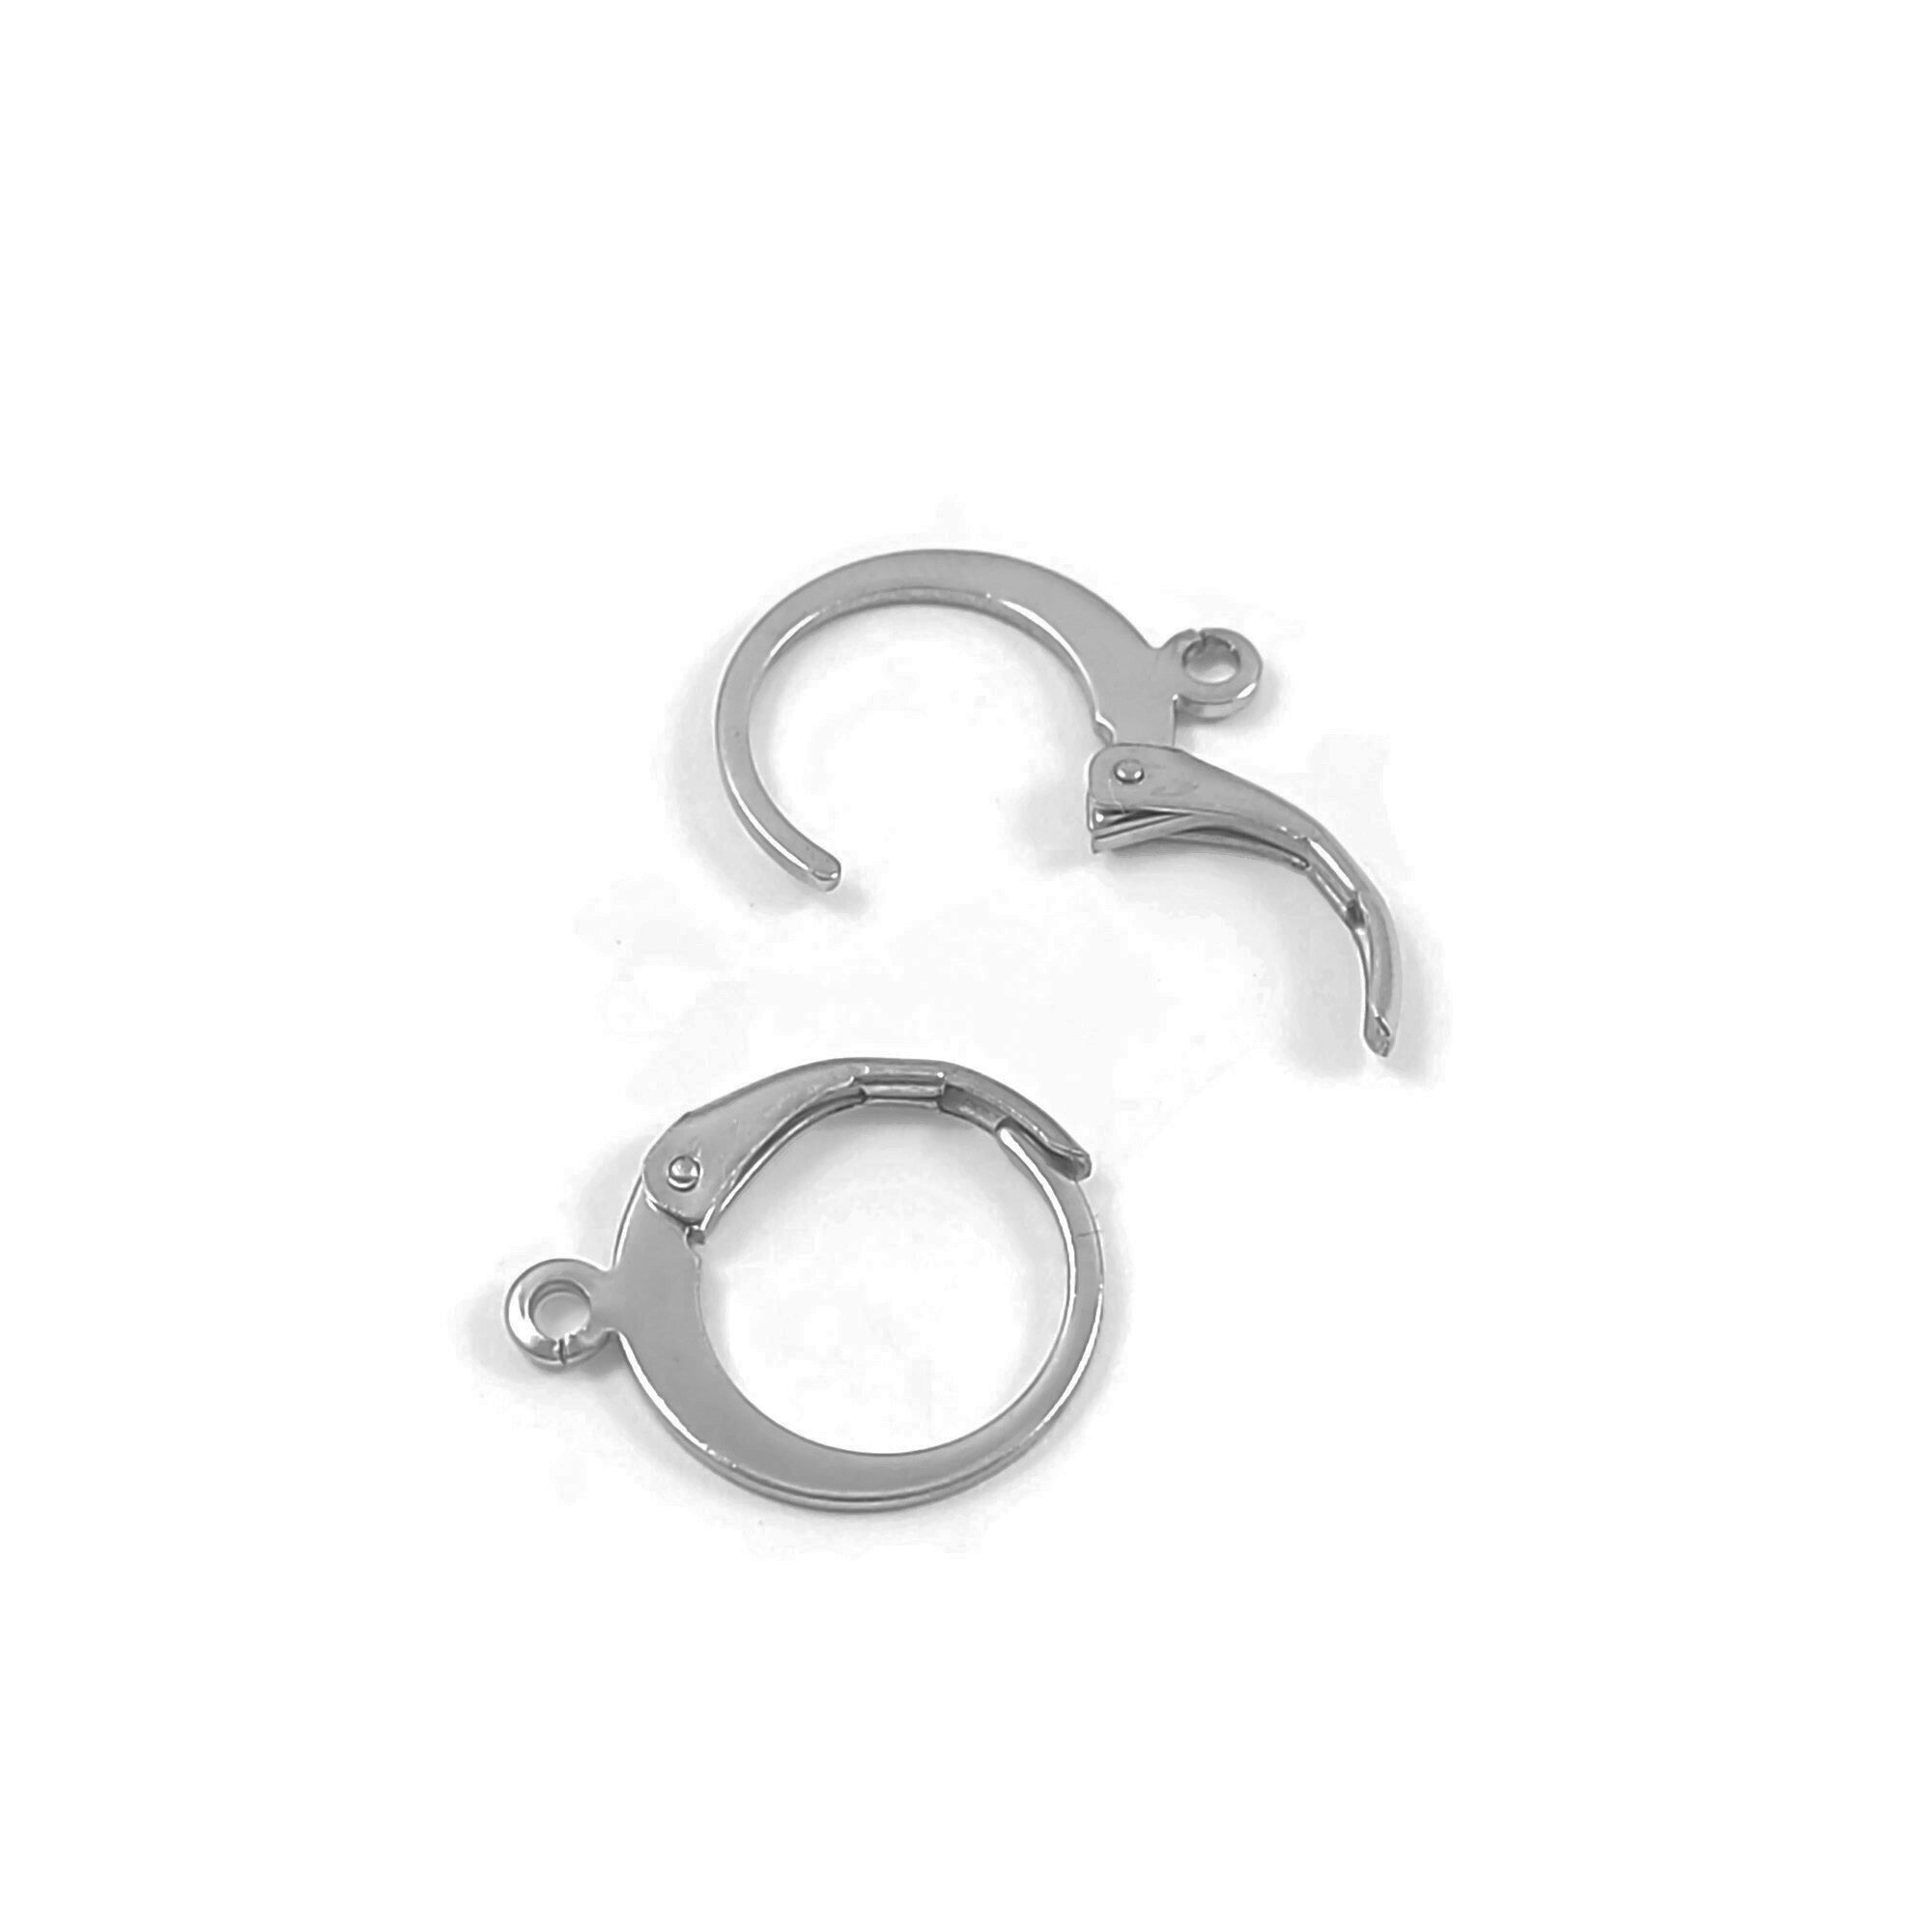 Round lever back hoop earring hooks 10pcs (5 pairs) Nickel free, lead